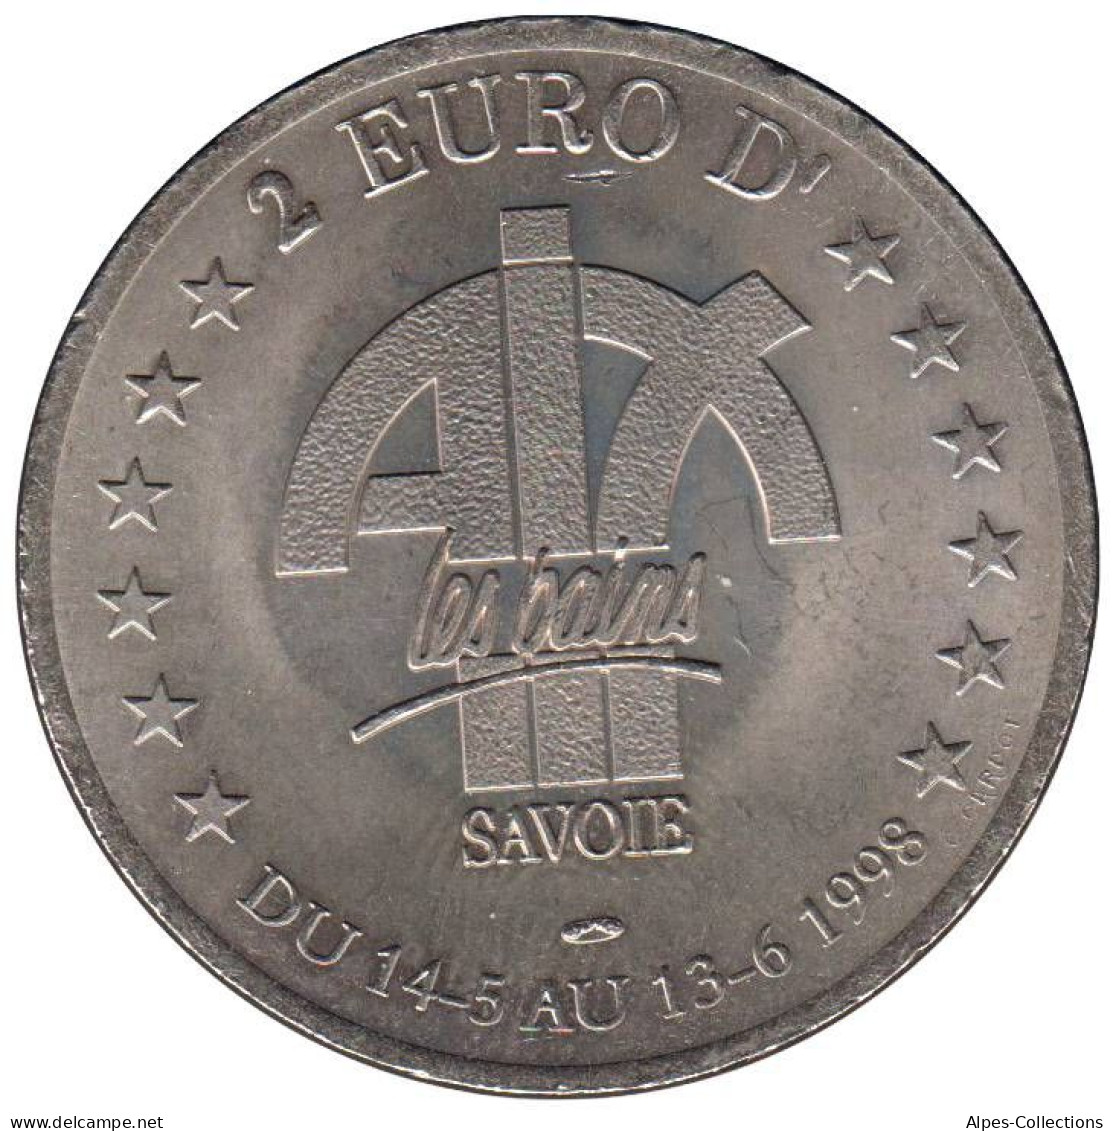 AIX LES BAINS - EU0020.3 - 2 EURO DES VILLES - Réf: T419 - 1998 - Euros Des Villes